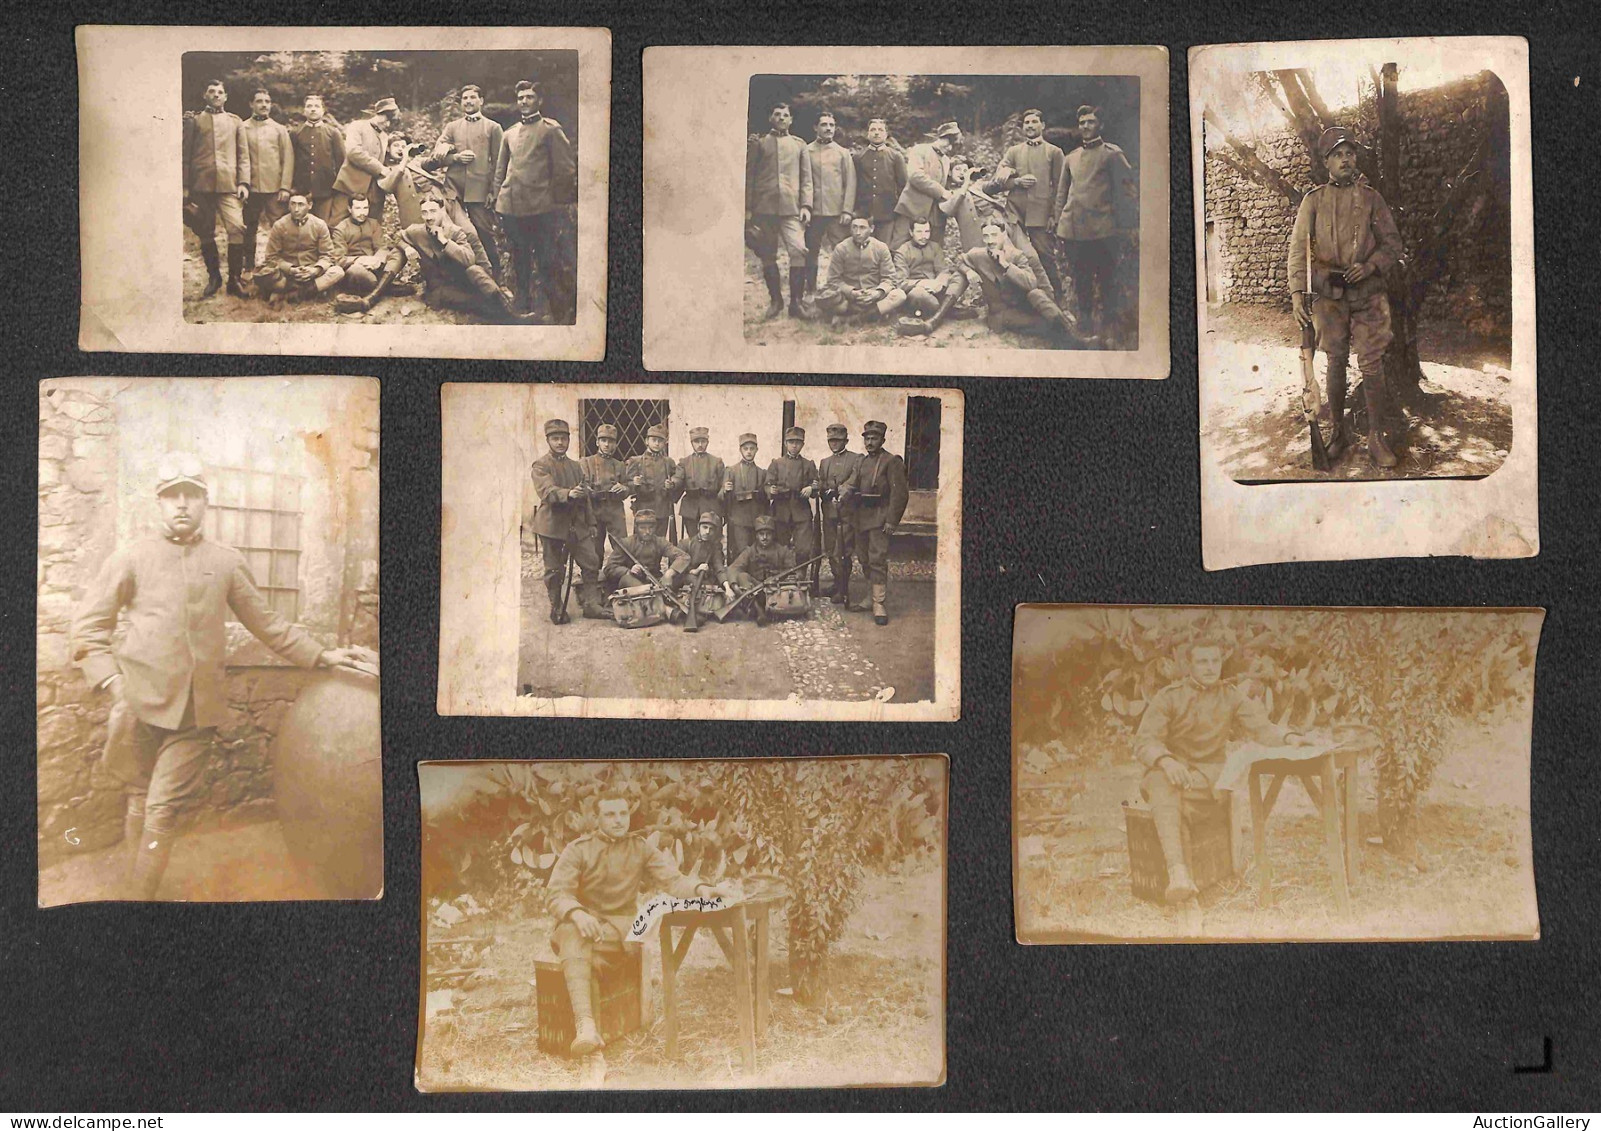 Colonie - Libia - Guerra di Libia - Militari (singoli - gruppi - postazioni) - 41 fotografie d'epoca (anche formato cart